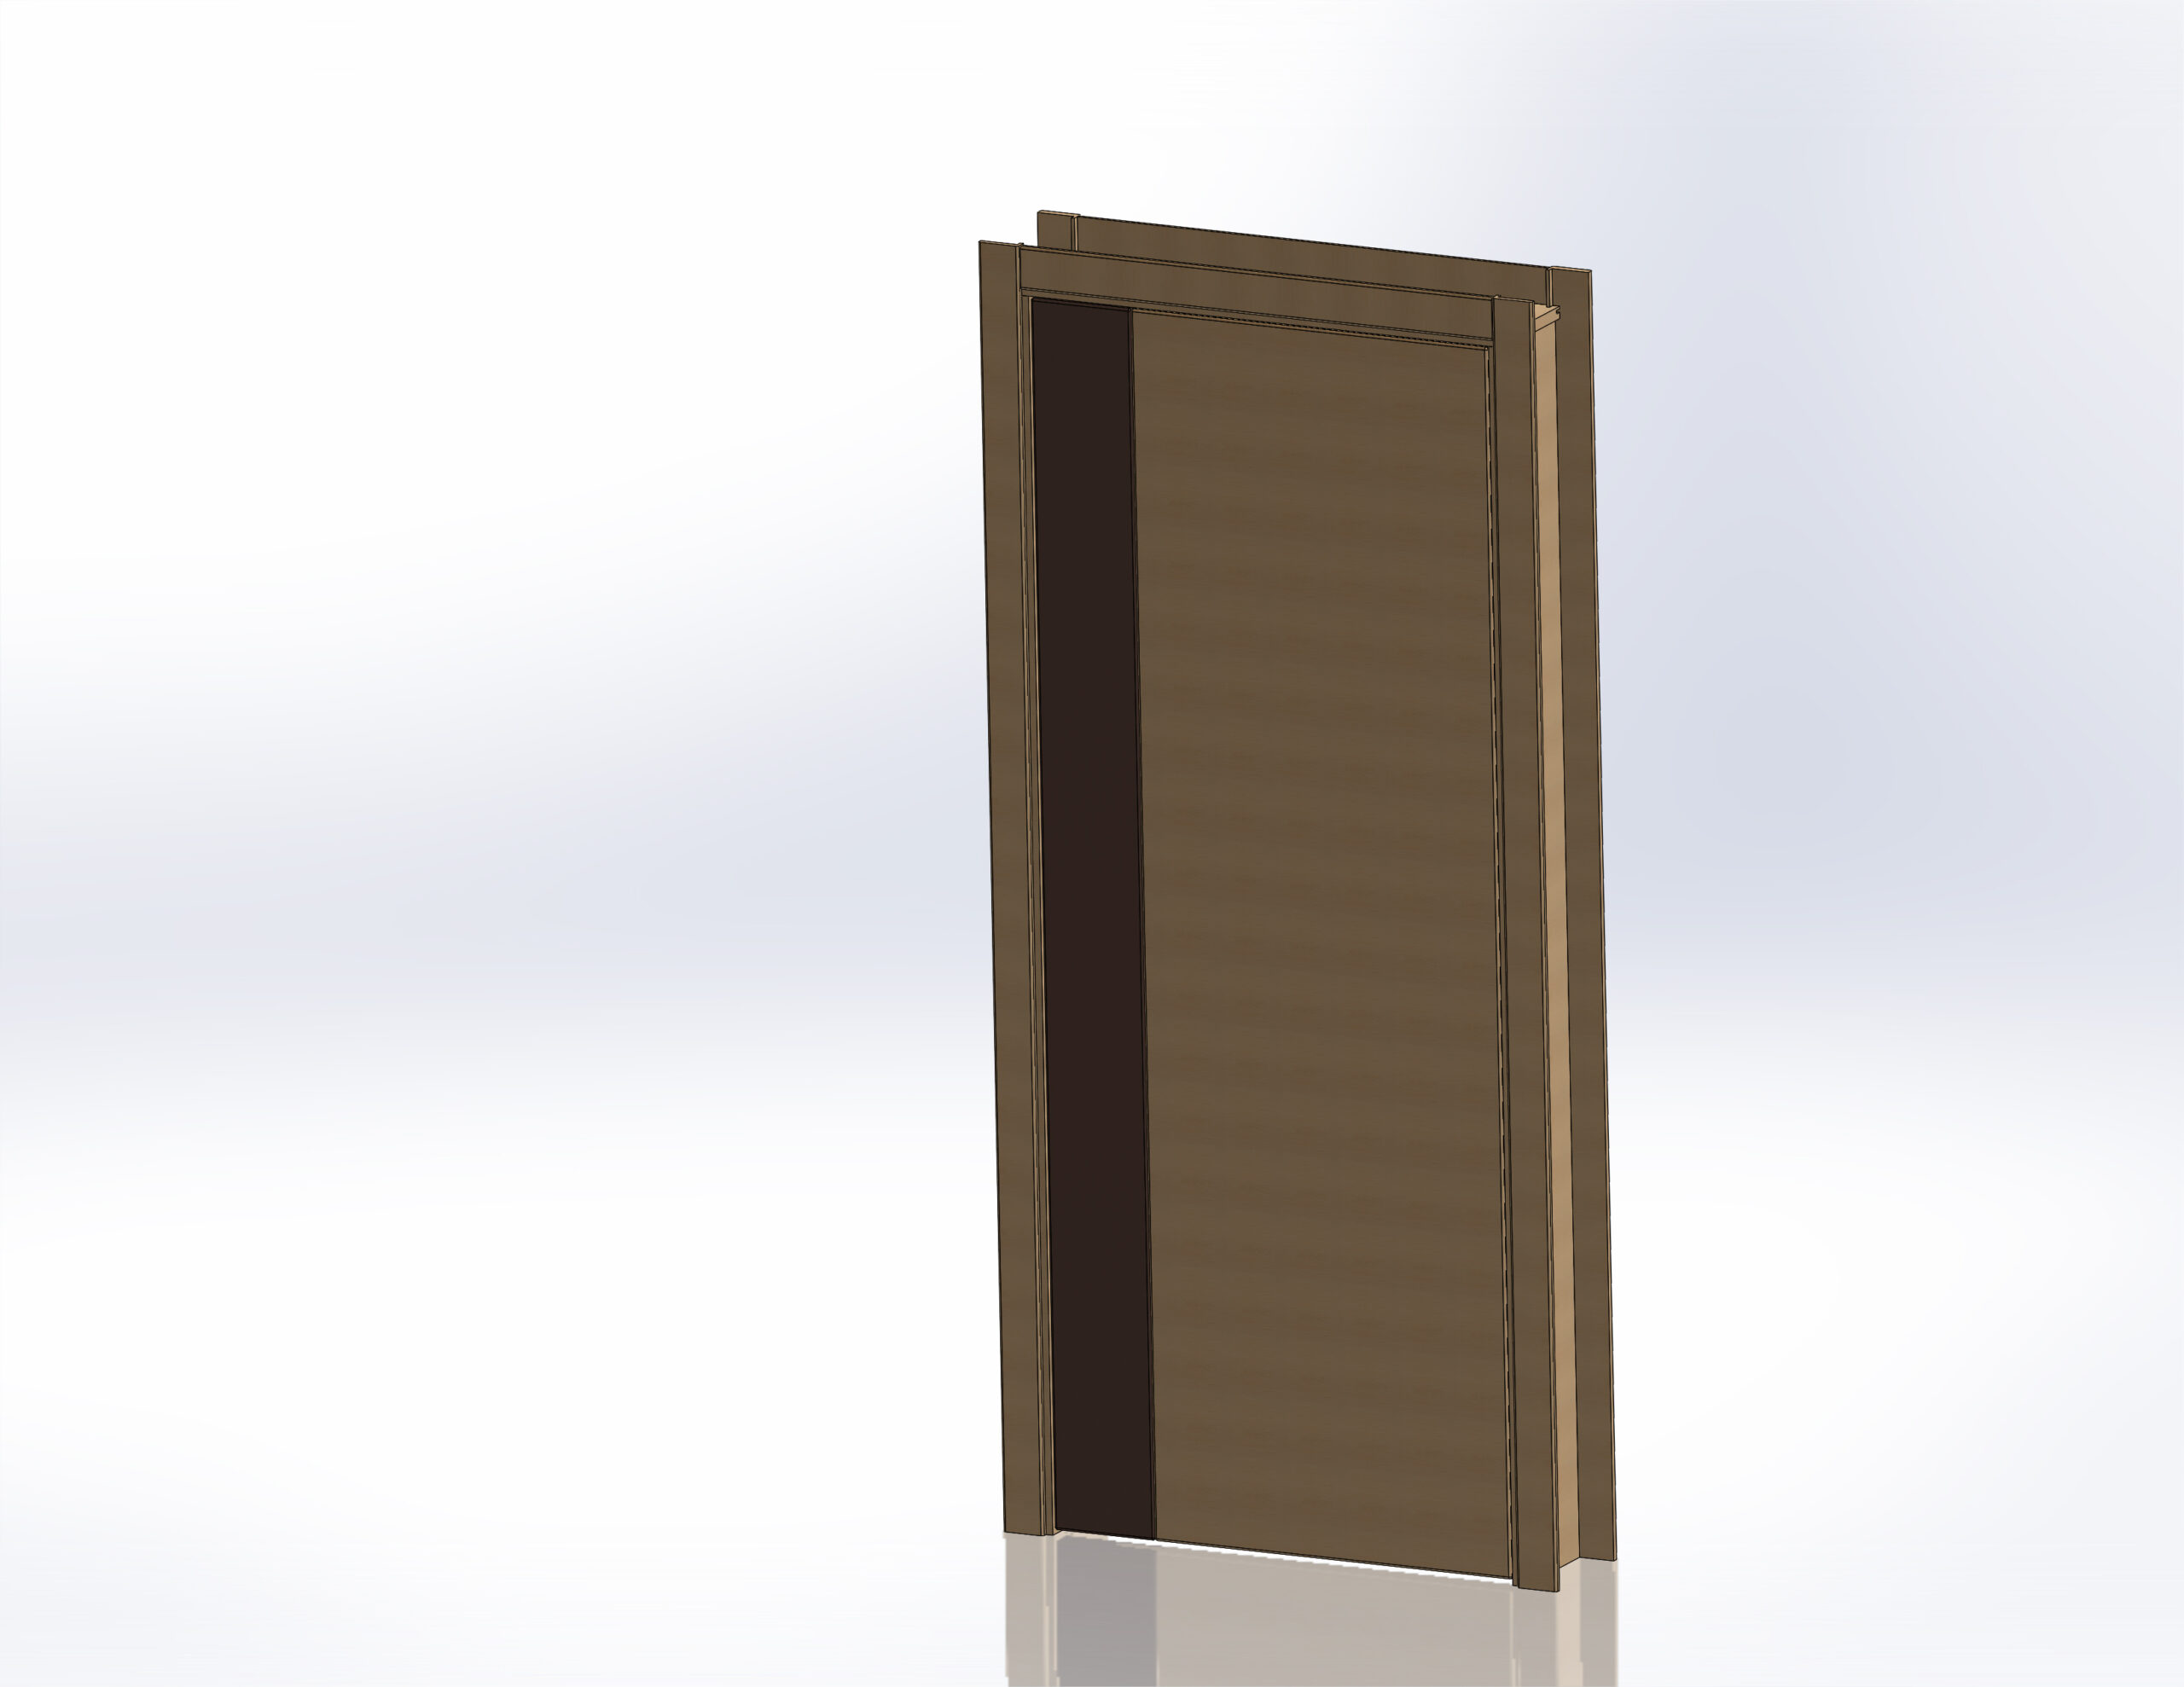 Дверной блок. Дверной блок композитный. Дверной блок 22-10/1 (б). Дверные блоки в сборе картинка.